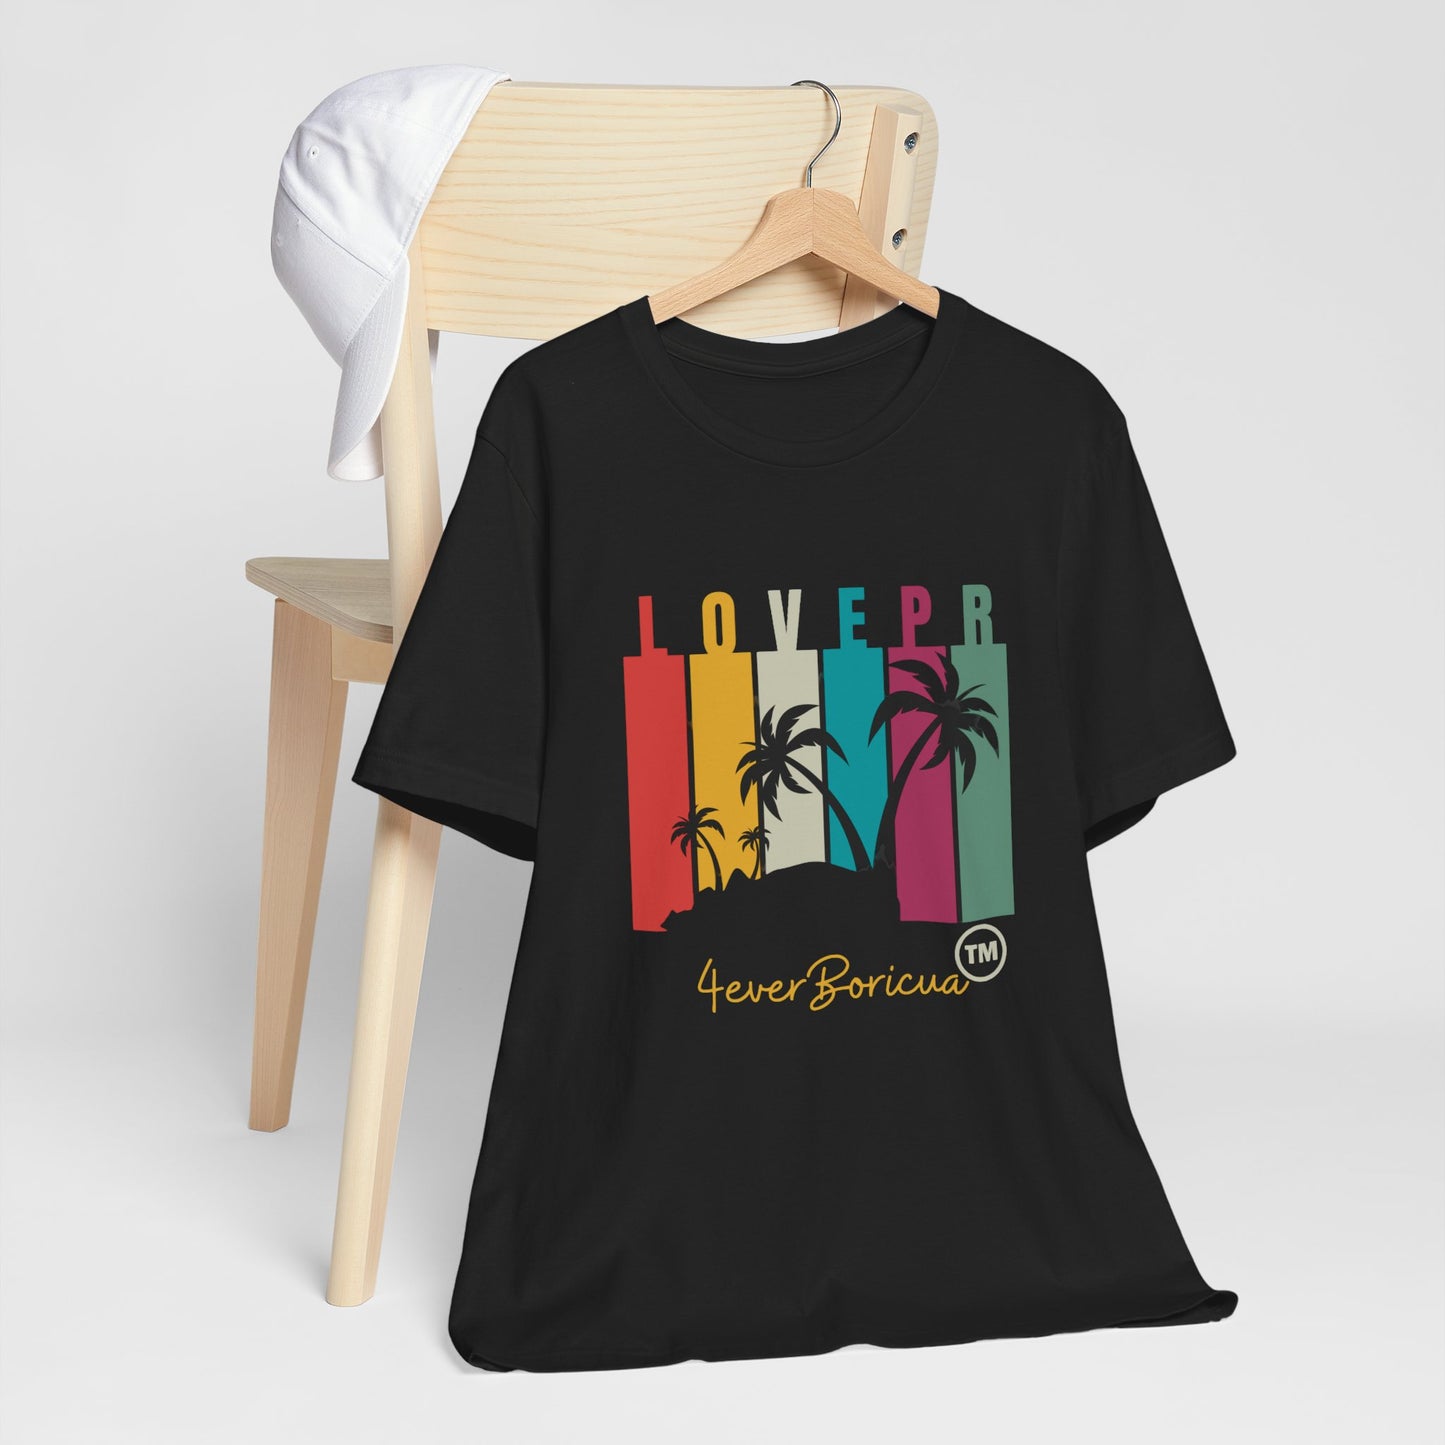 LOVE PR CARIBBEAN PUERTO RICO Unisex Shirt 4everBoricua™️